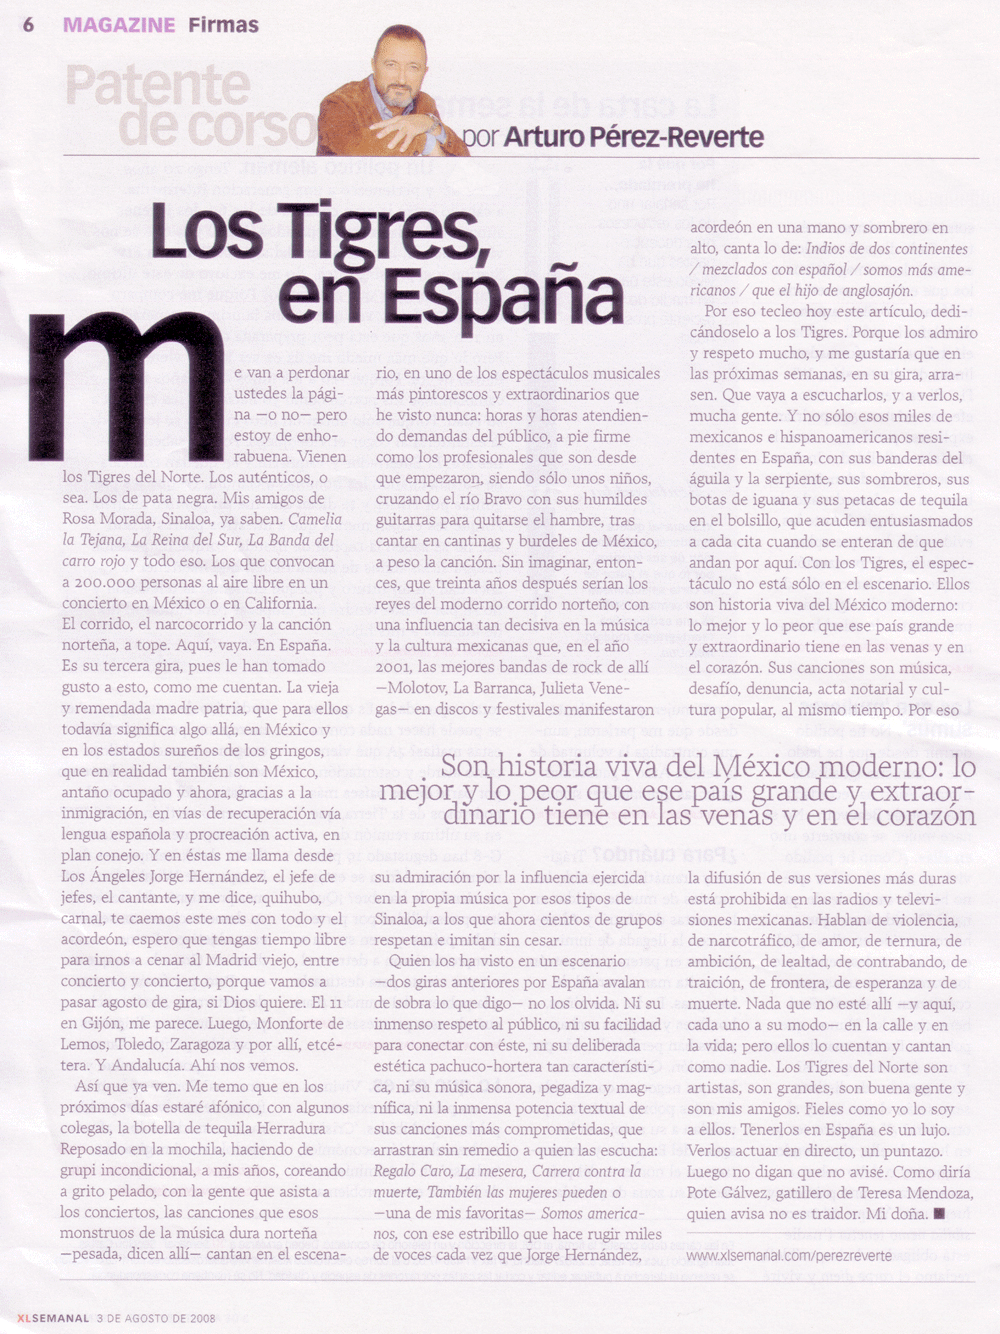 "Los Tigres en España" El Semanal, 3 de agosto de 2008